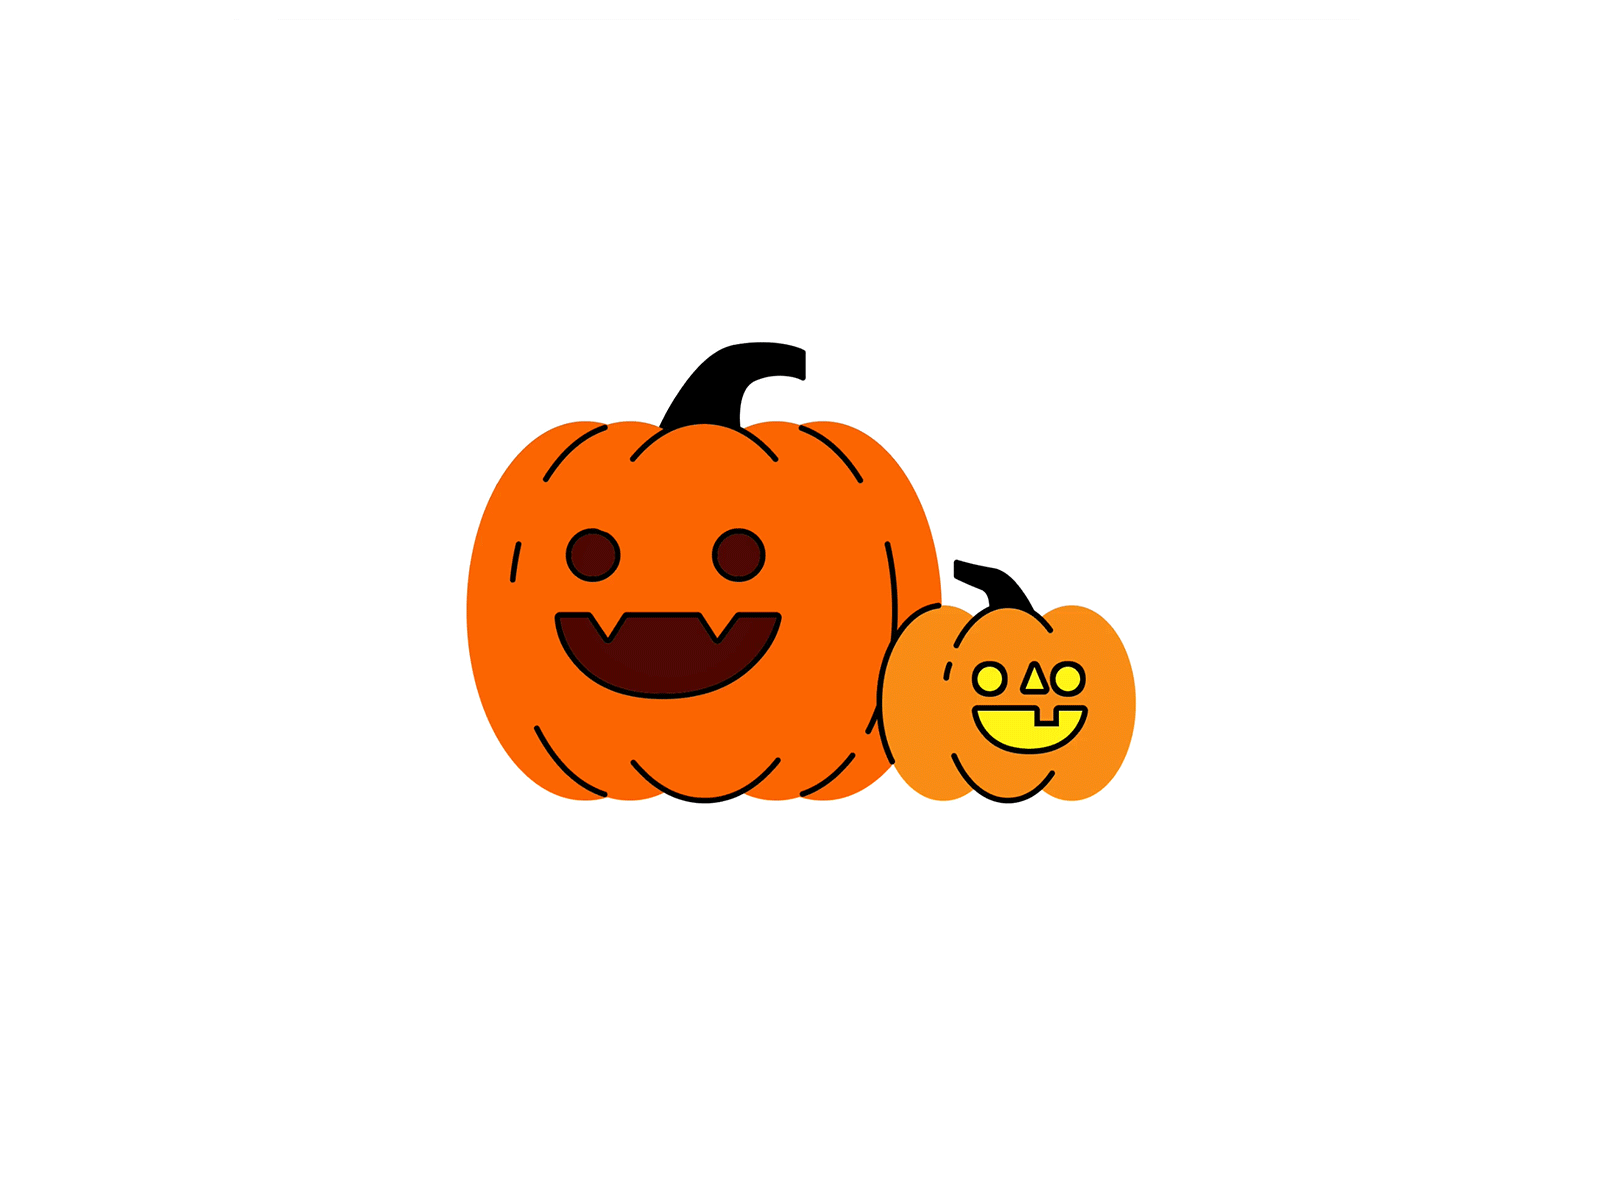 Spooky pumpkin animation cat chilltober halloween illustration inktober inktober2019 invision studio invisionstudio pumpkin pumpkins